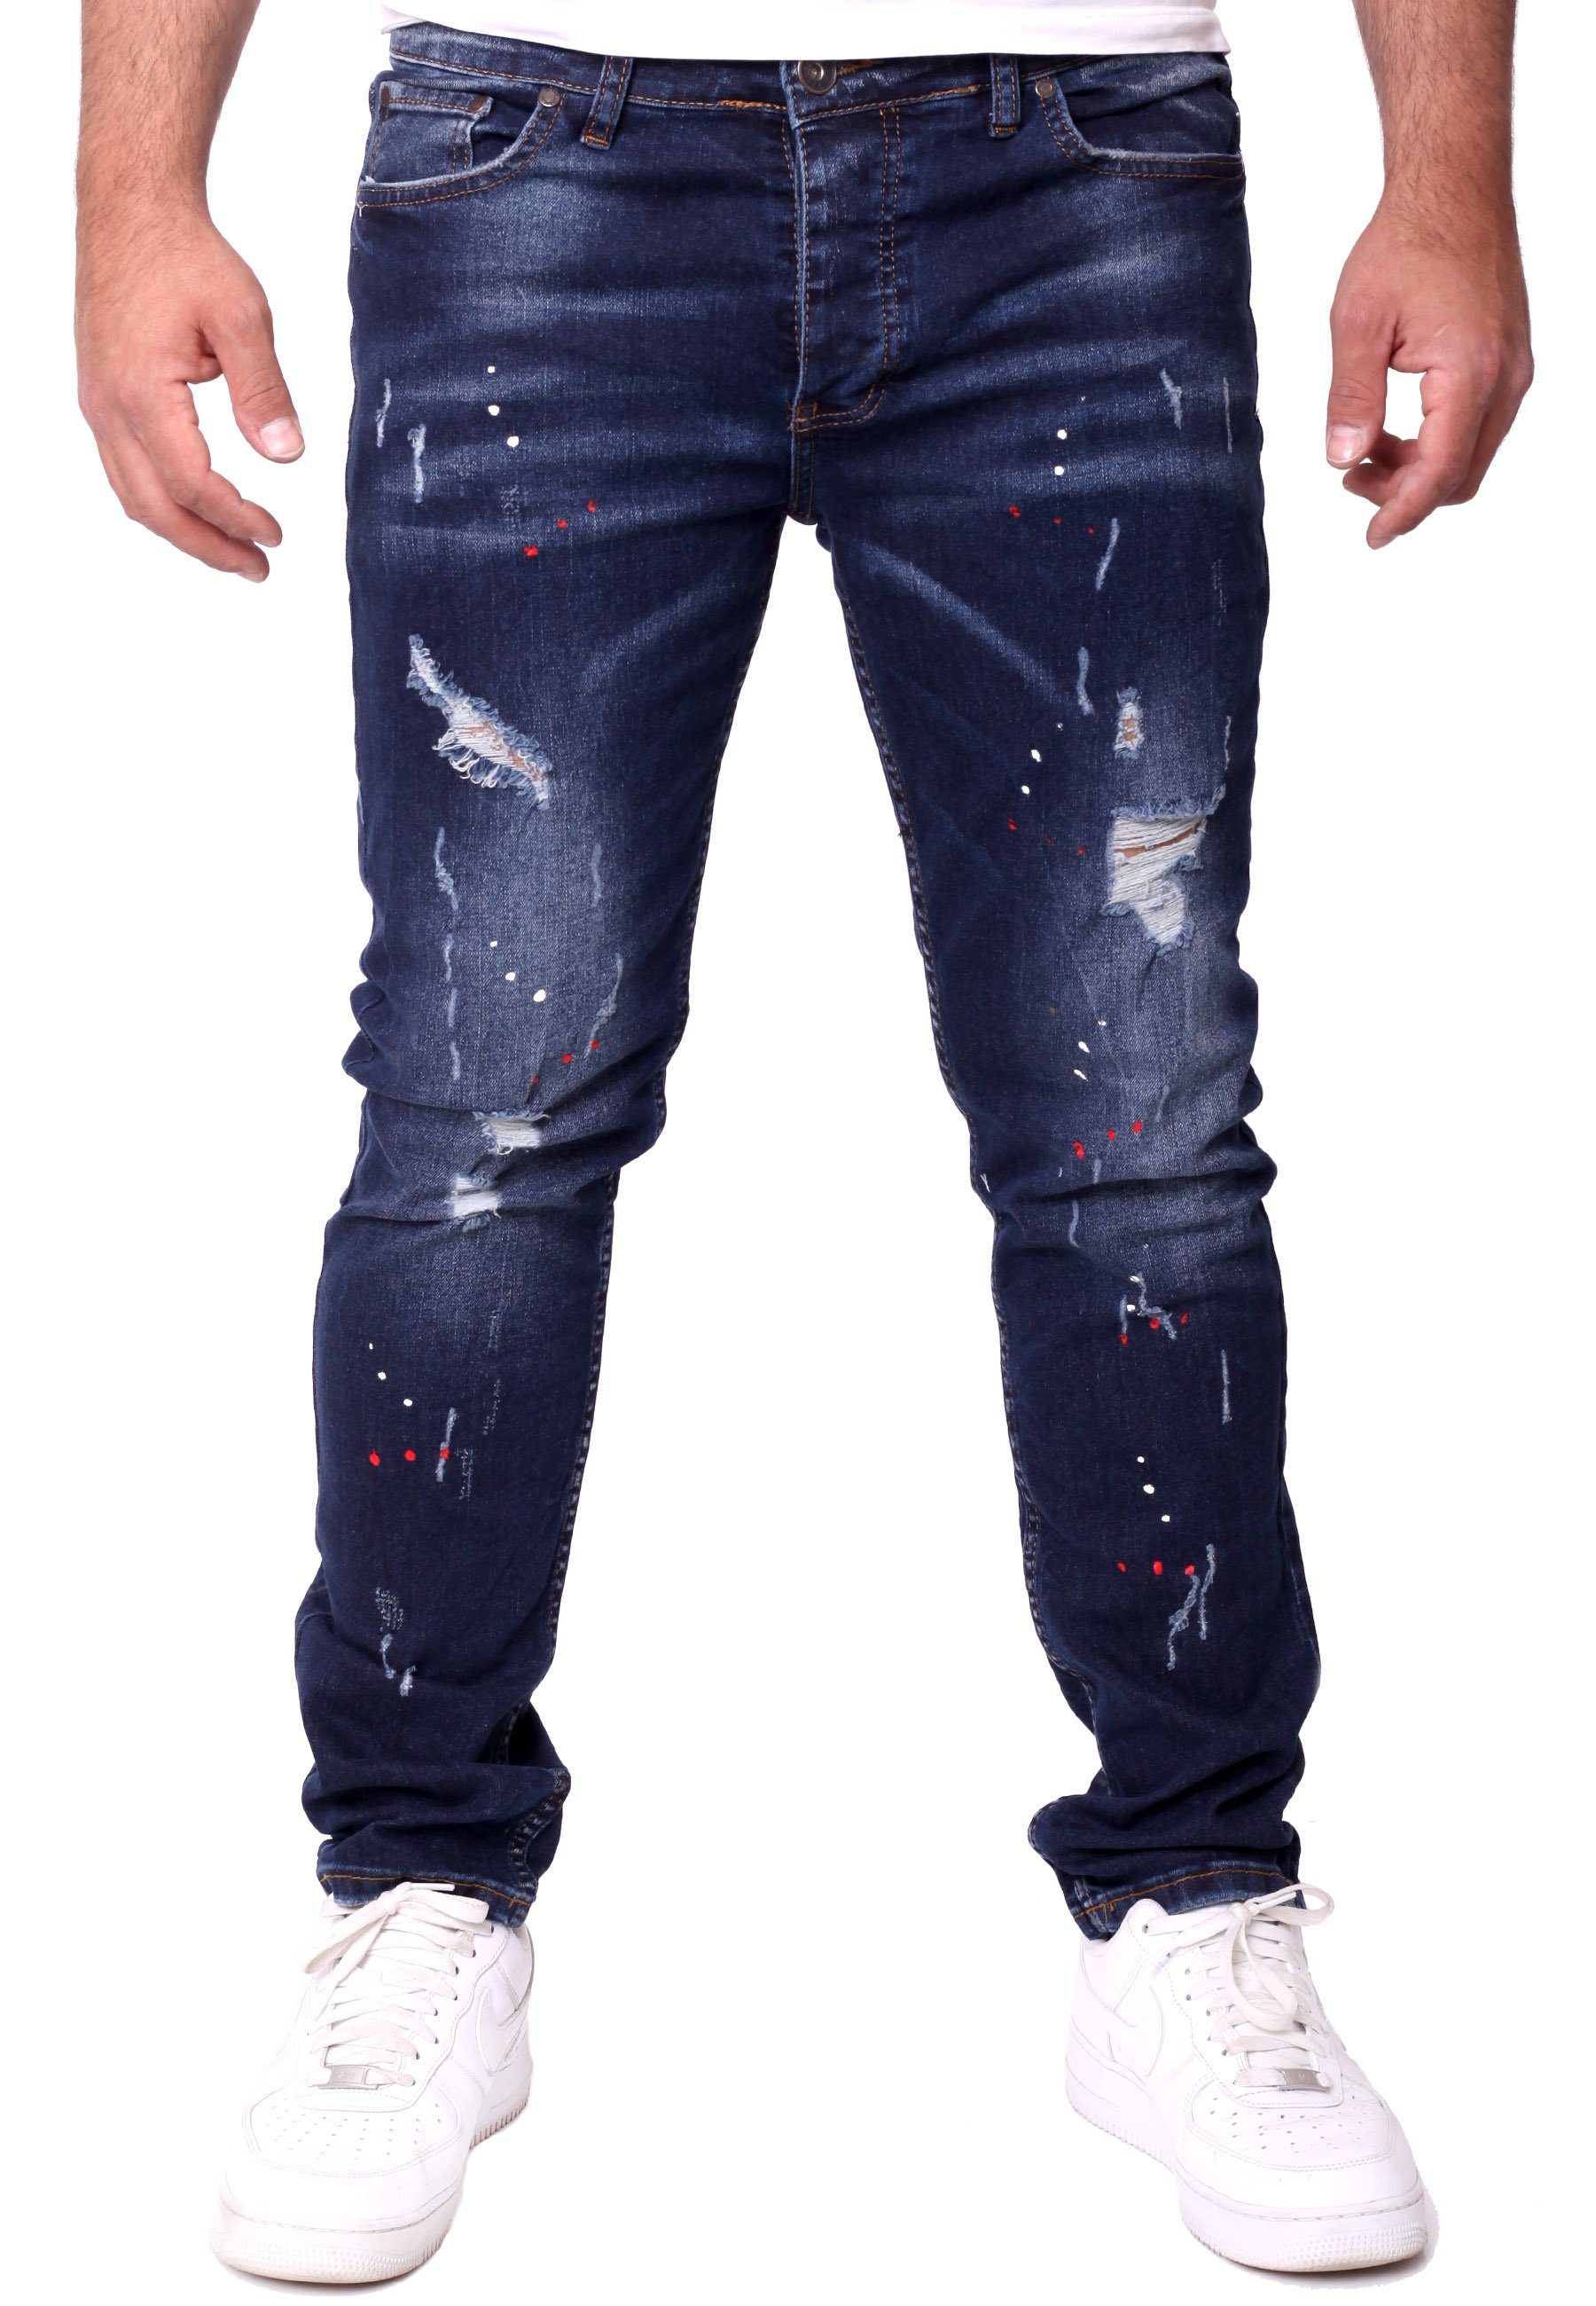 Jeanshose Jeans dunkelblau Reslad Stretch Jeanshose Reslad Slim Color-Splashes Destroyed Fit Destroyed-Jeans Männer-Hose Herren Denim Destroyed